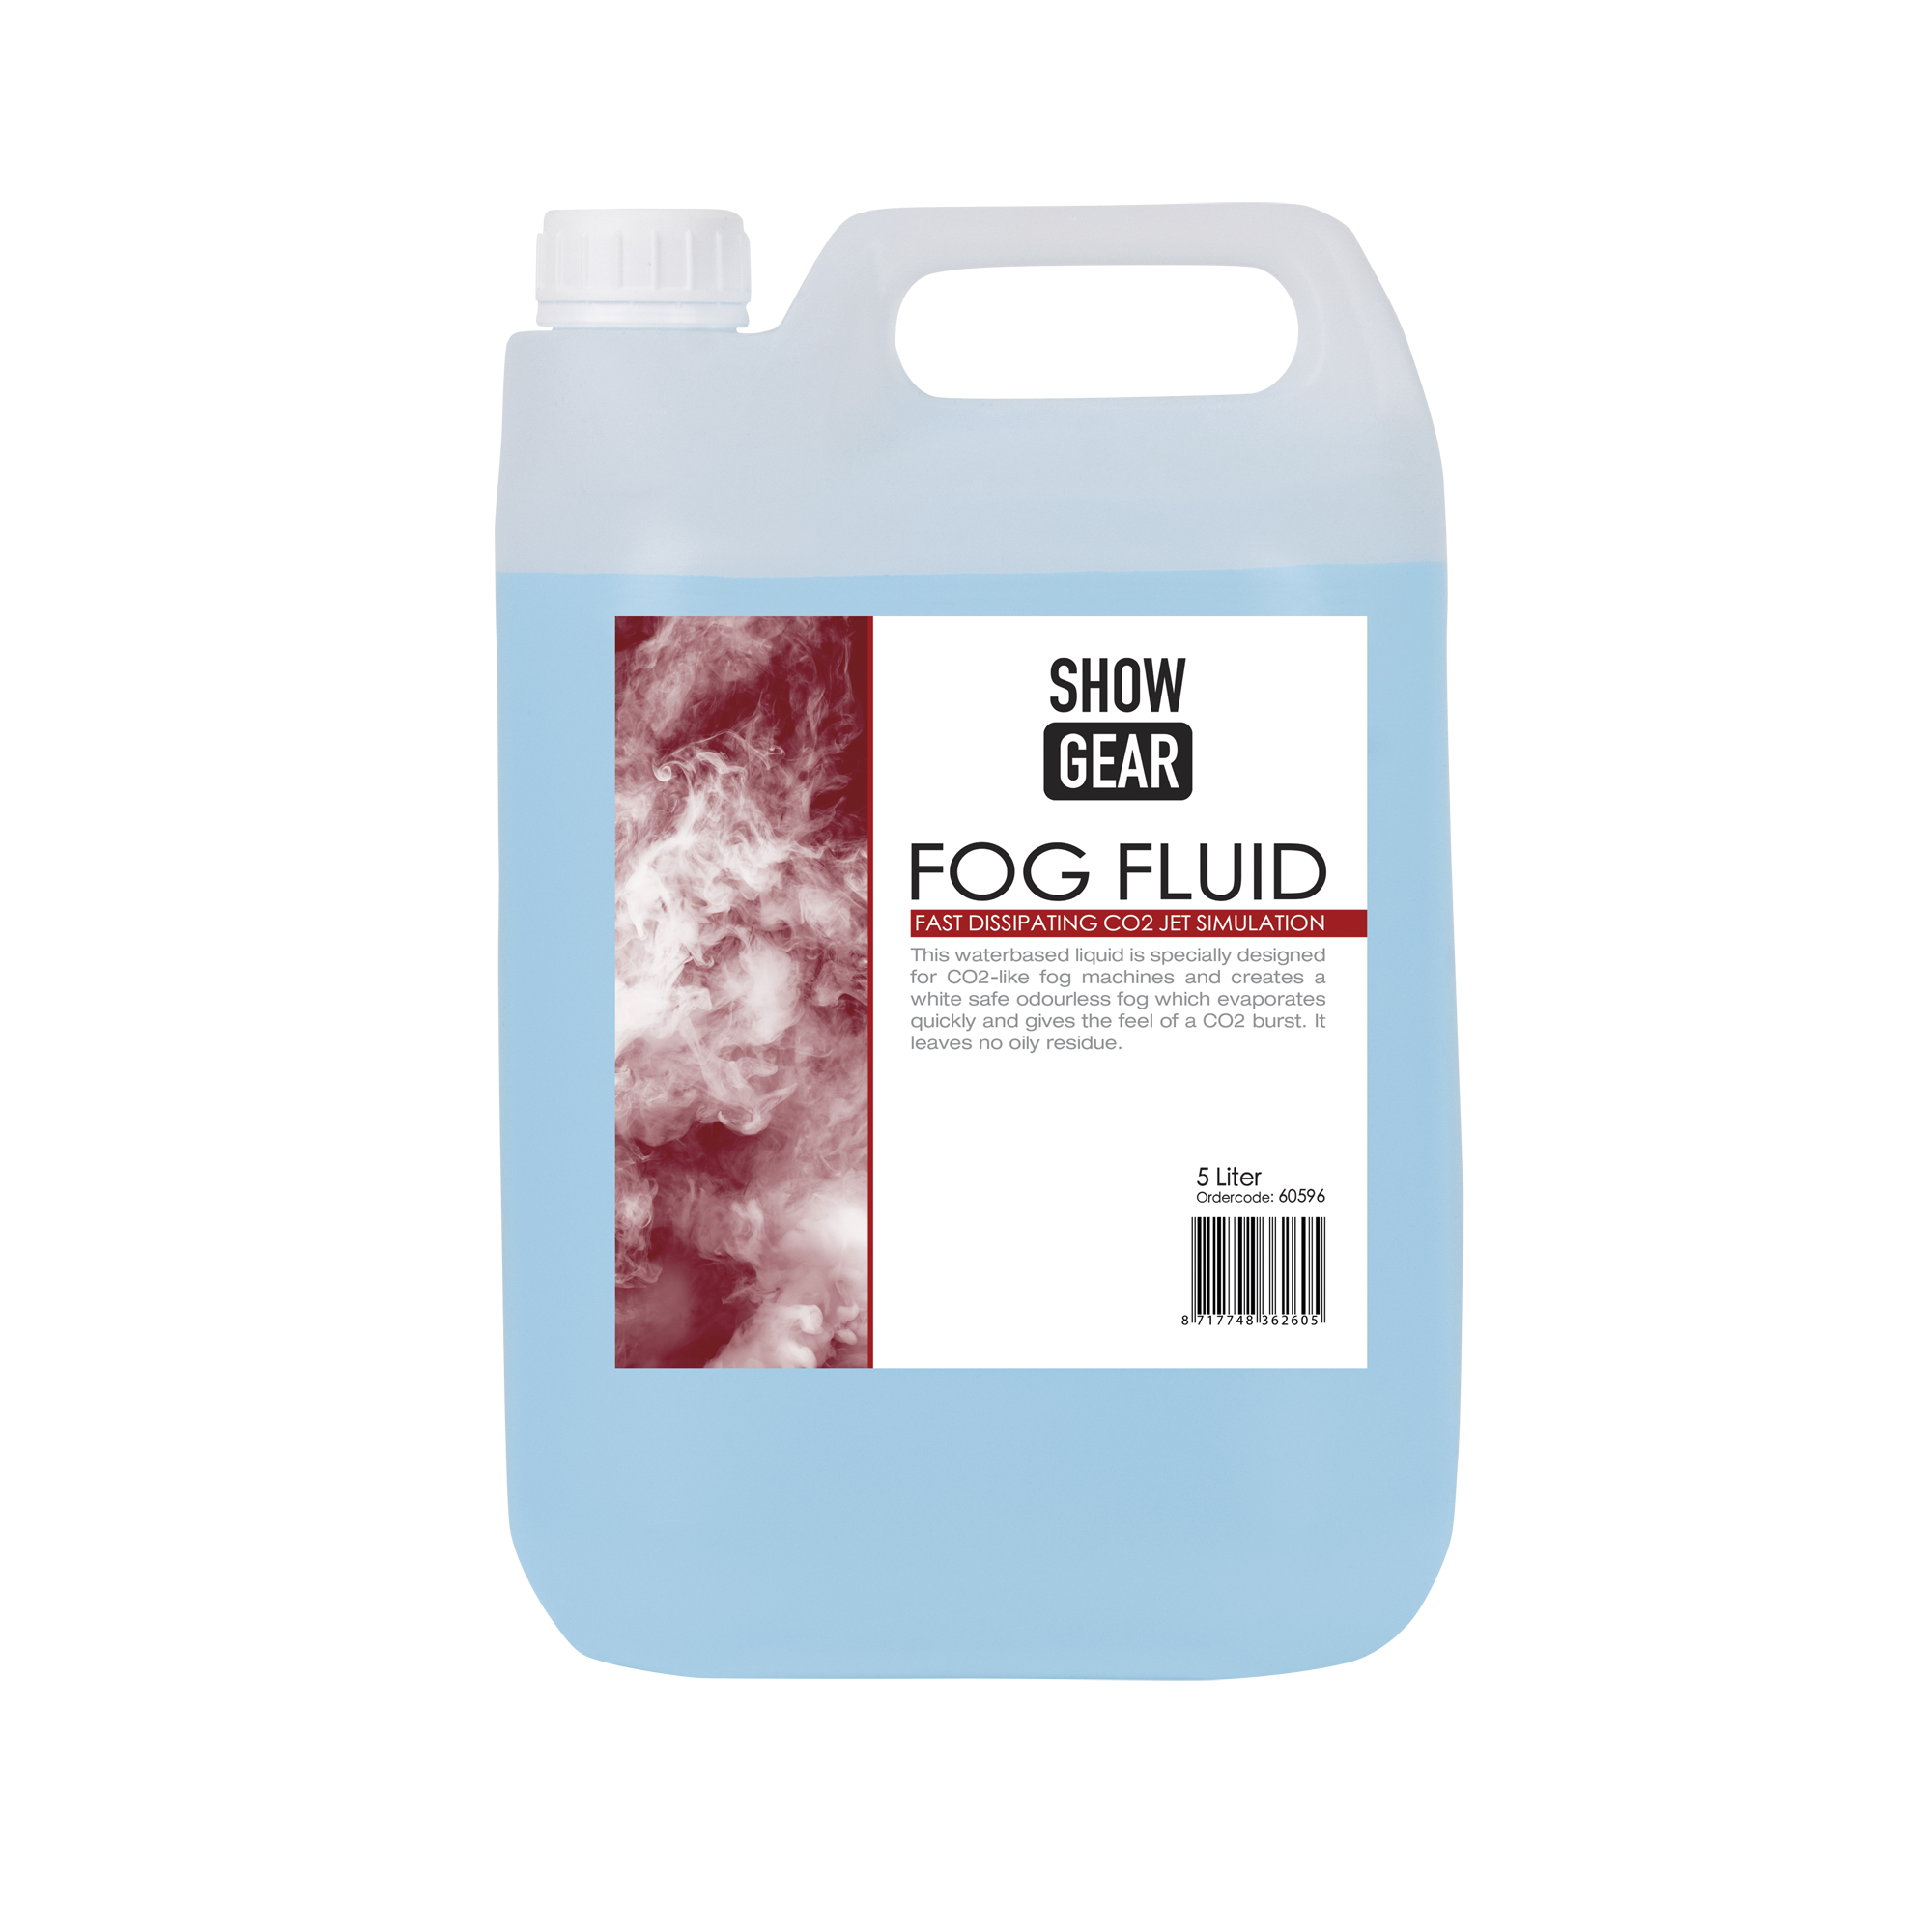 Fog Fluid Fast Dissipating - Onlinediscowinkel.nl